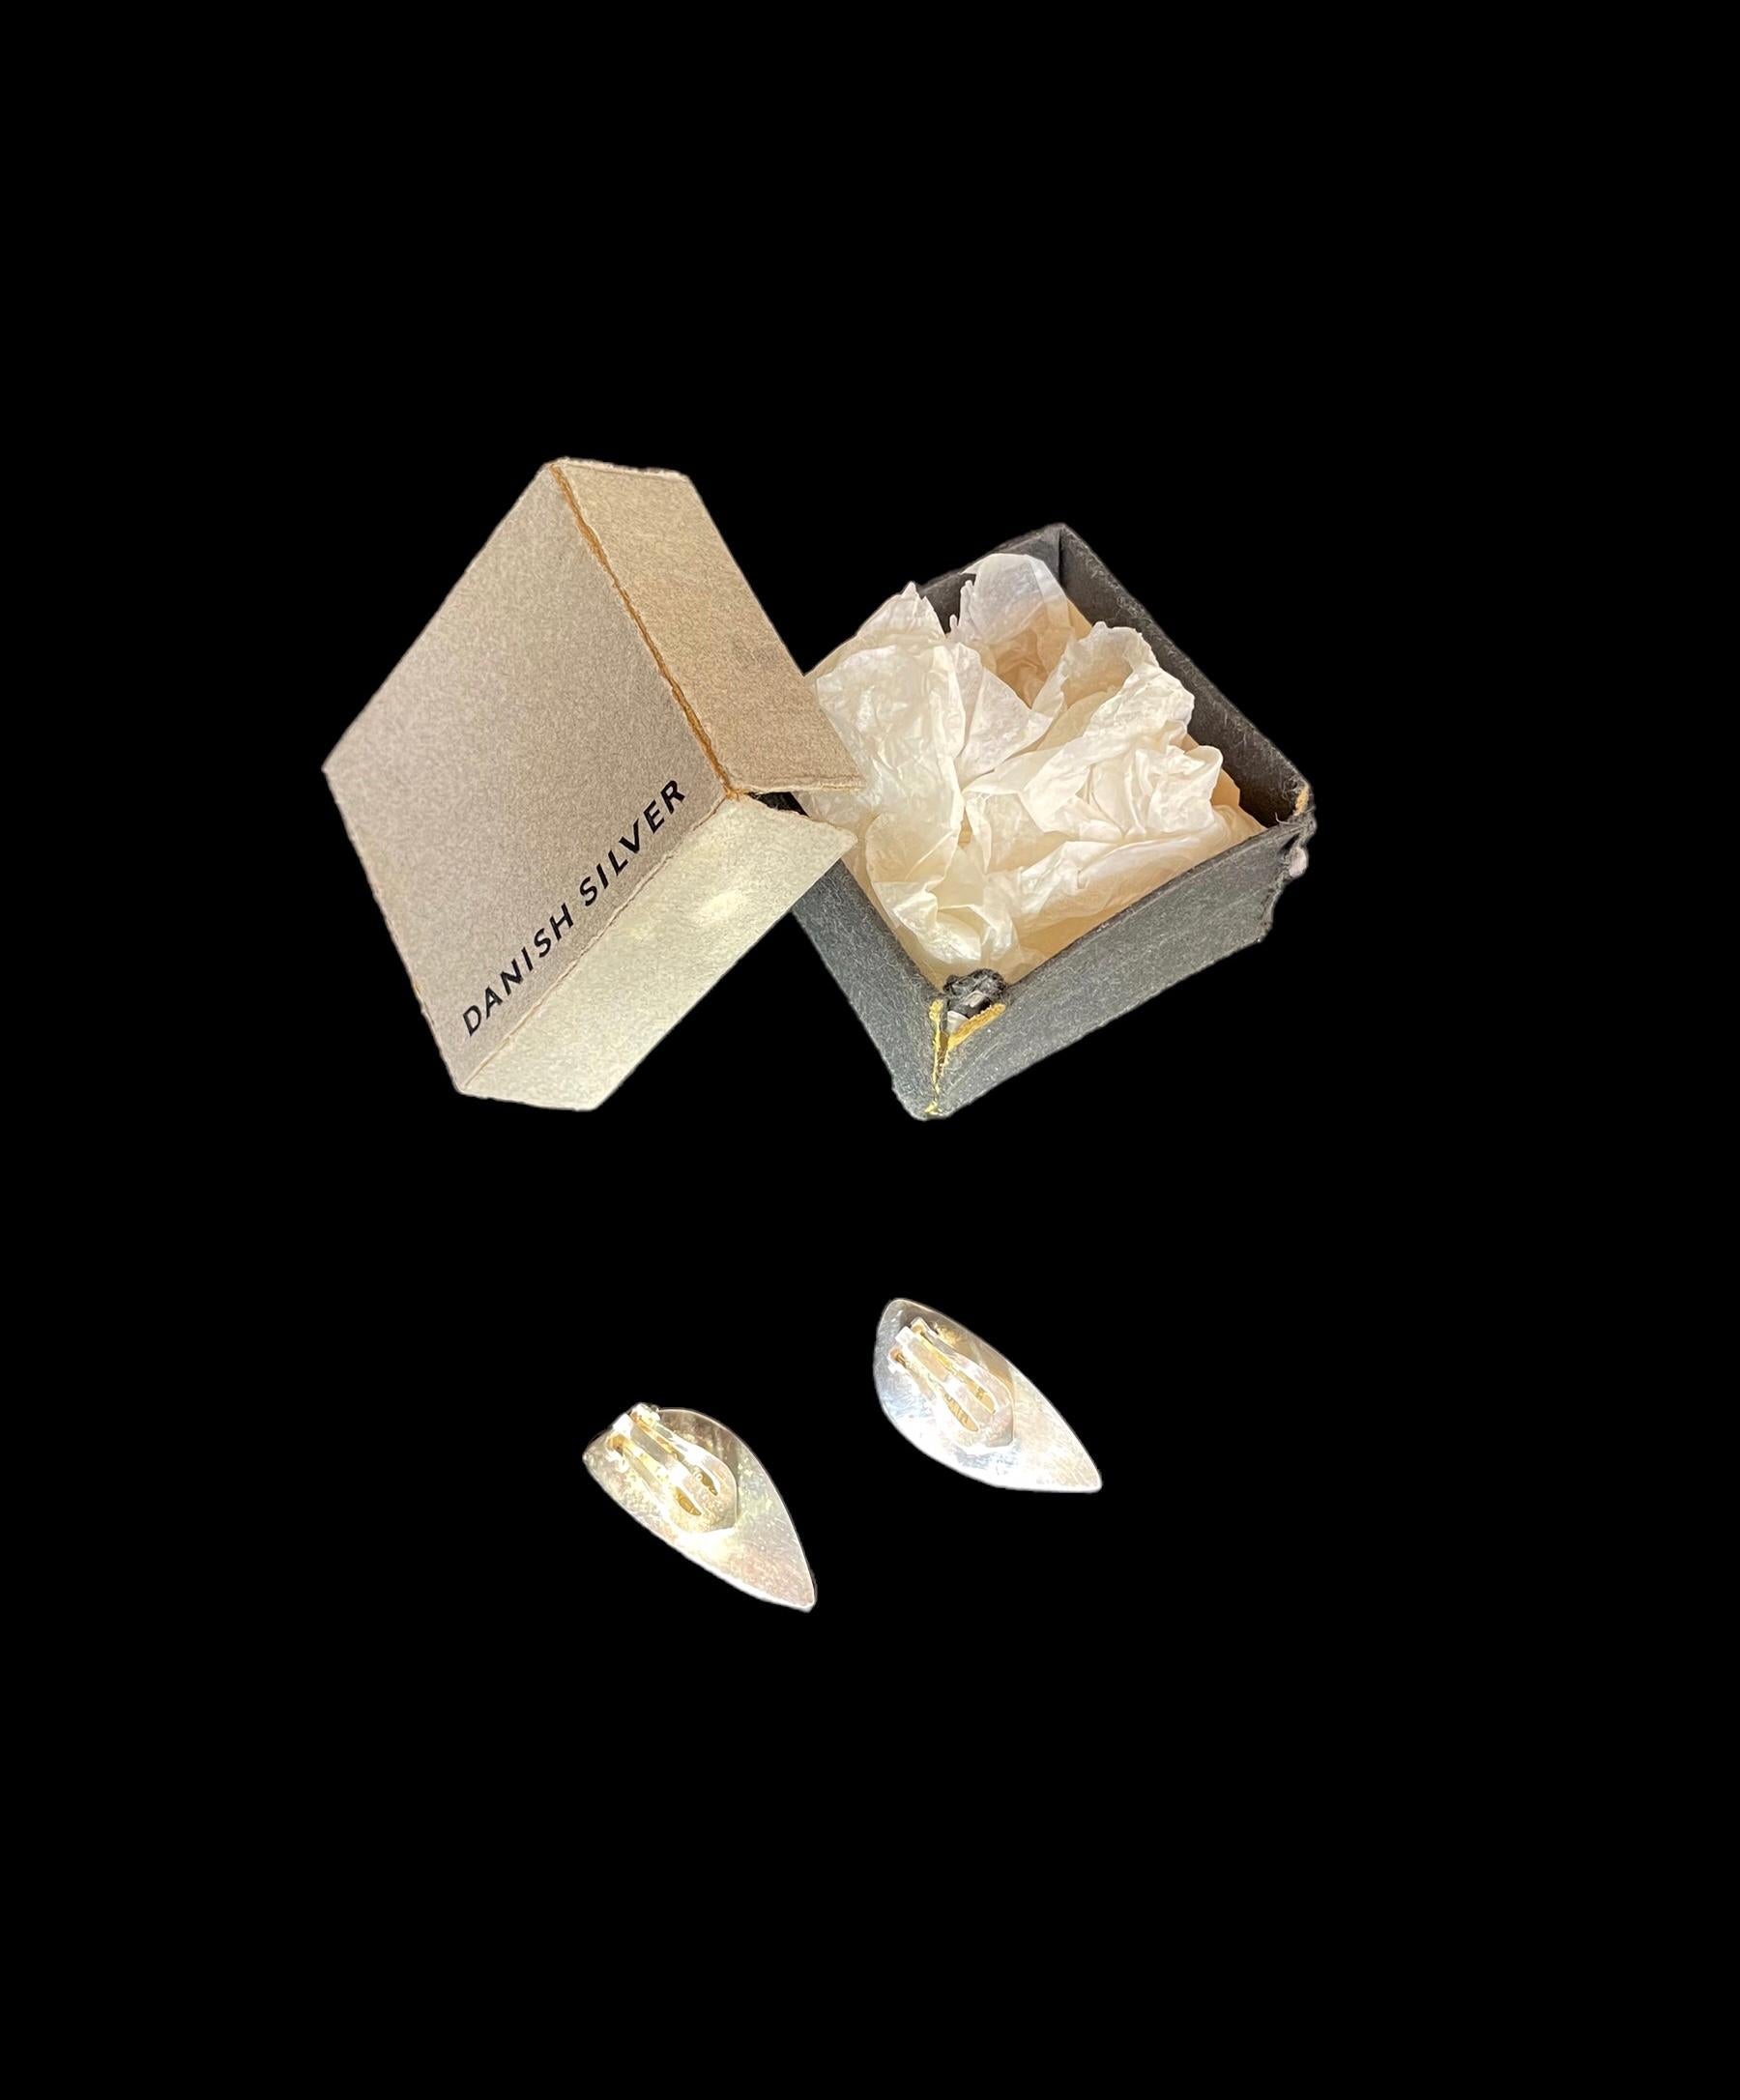 Boucles d'oreilles en argent Hansen des années 1960, Danemark 318 conçu par Bent Gabrielsen (1928-2014).
Paire de boucles d'oreilles modernistes en argent massif. 
Forme de feuille concave avec un bord chanfreiné et des fixations à clip.

HANS